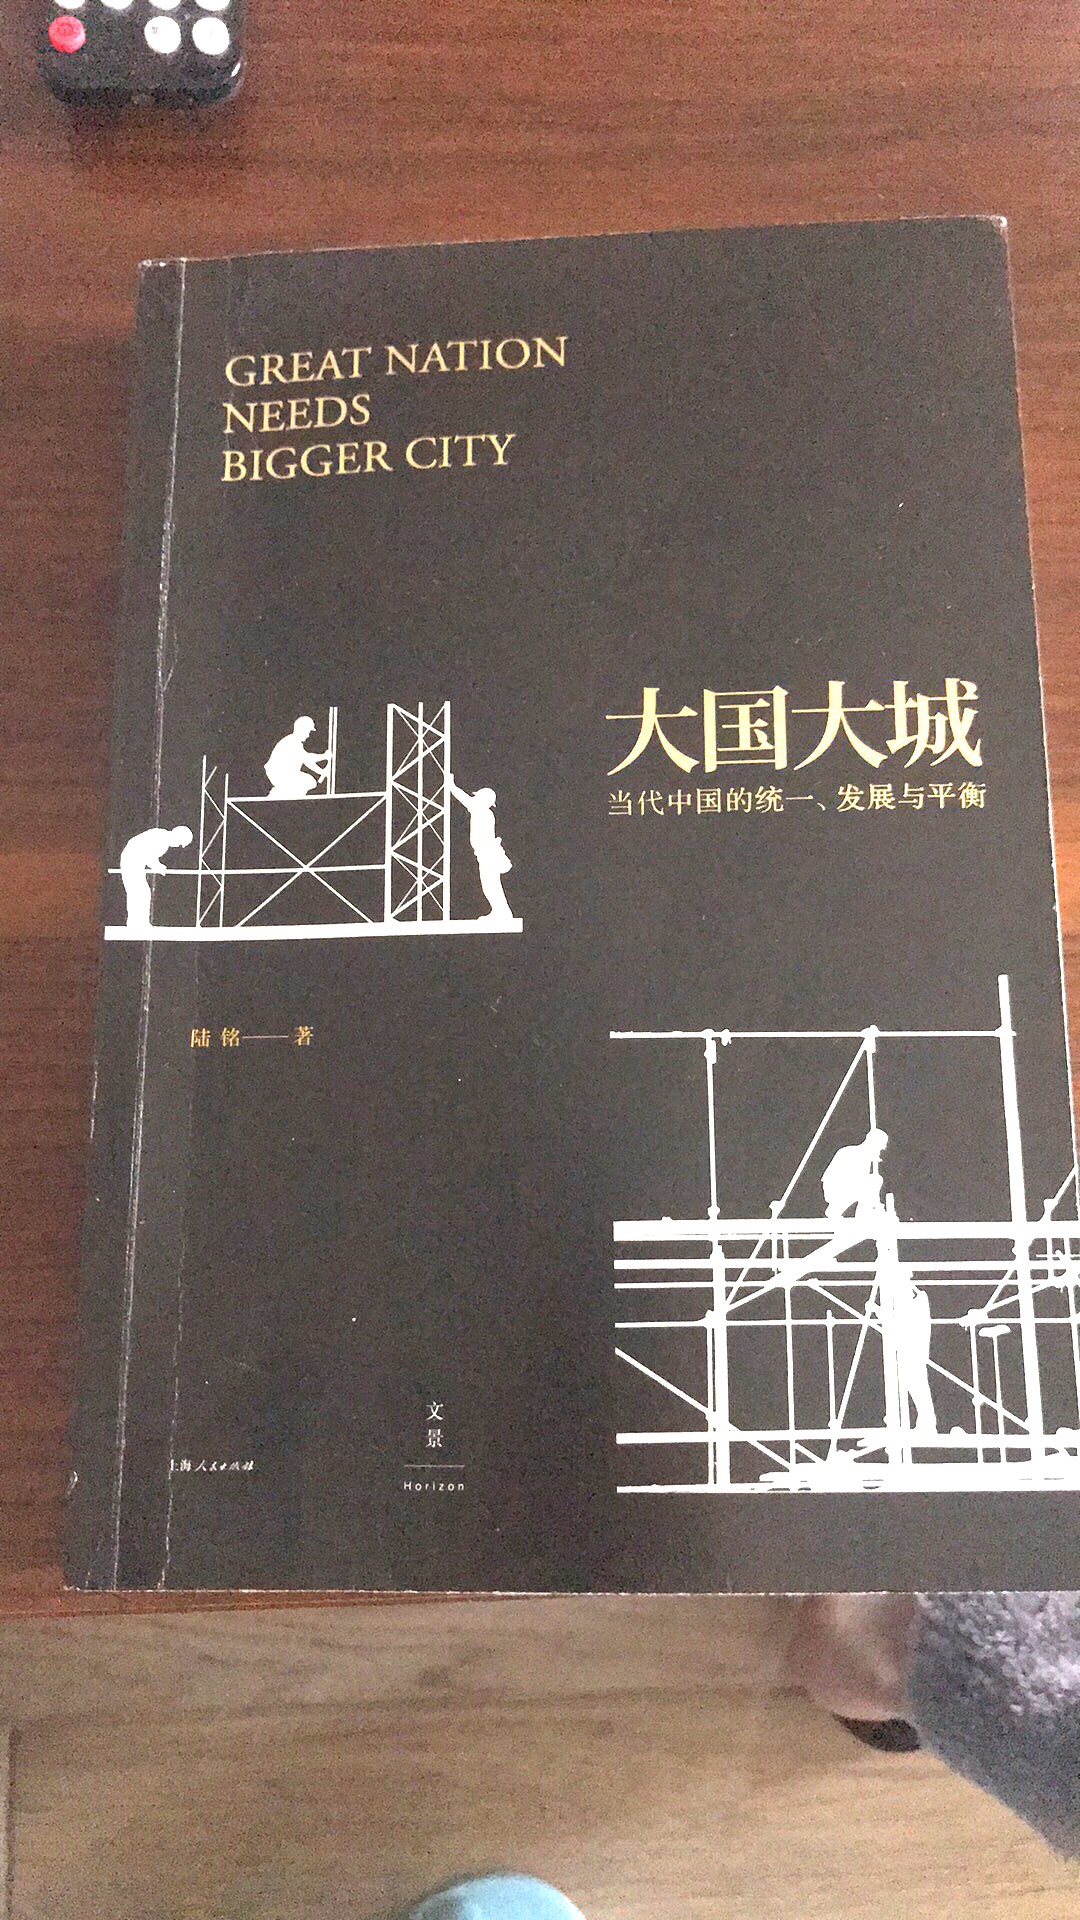 非常棒的一本书，作为在大城市里面成长的人，更要好好了解城市的发展